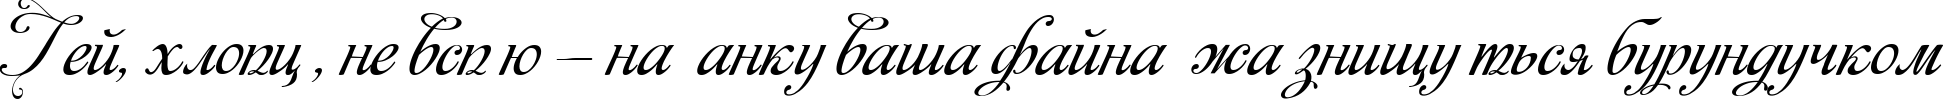 Пример написания шрифтом Monplesir script текста на украинском